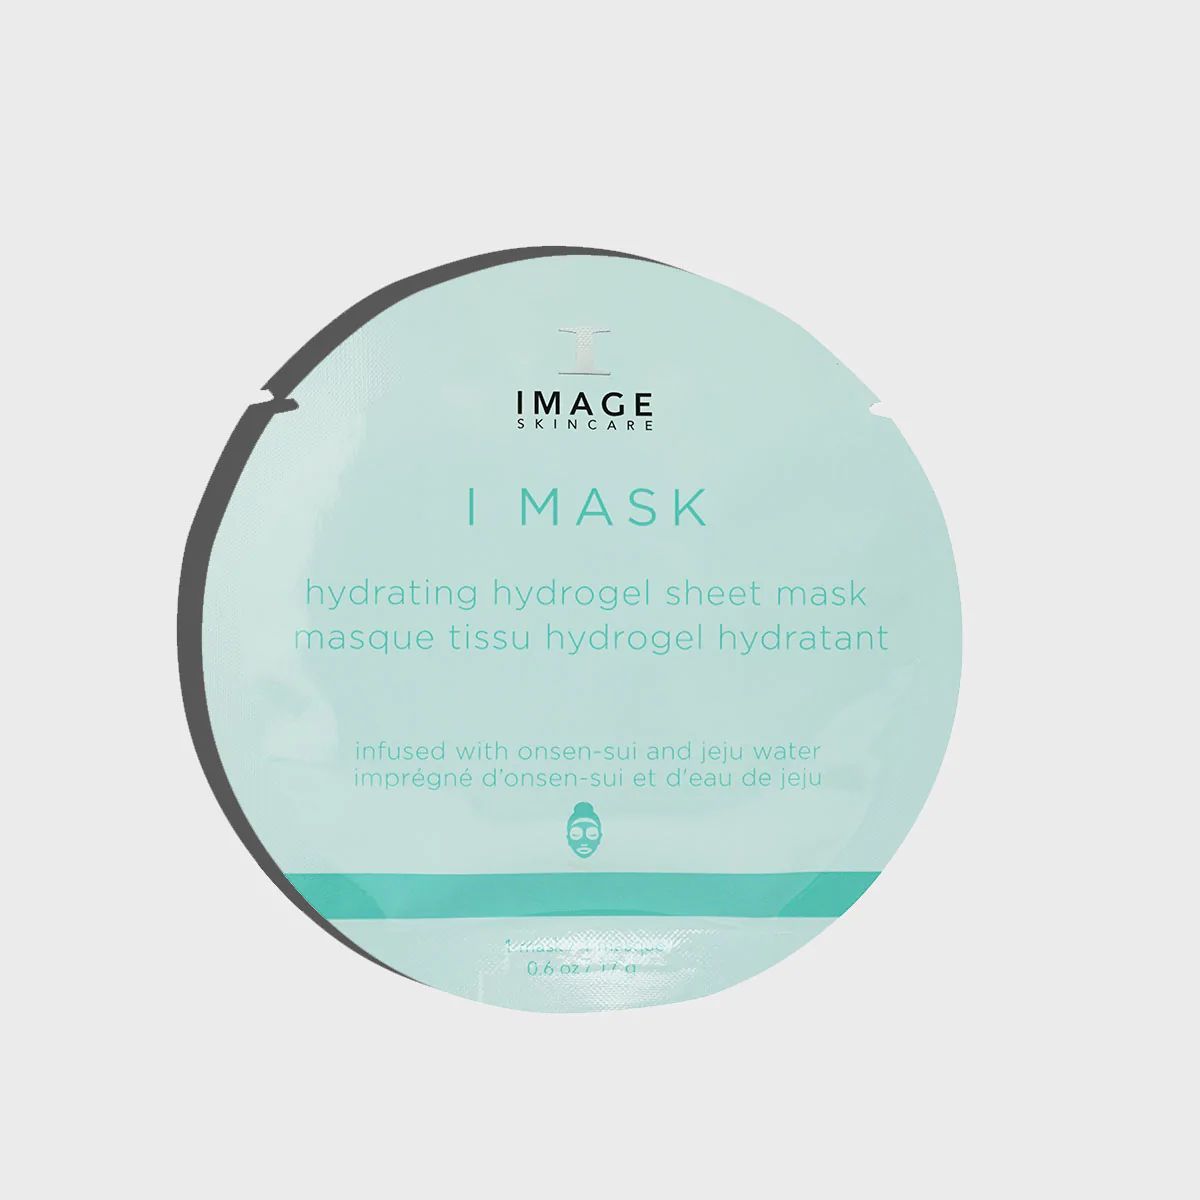 I MASK hydrating hydrogel sheet mask (single) | Image Skincare